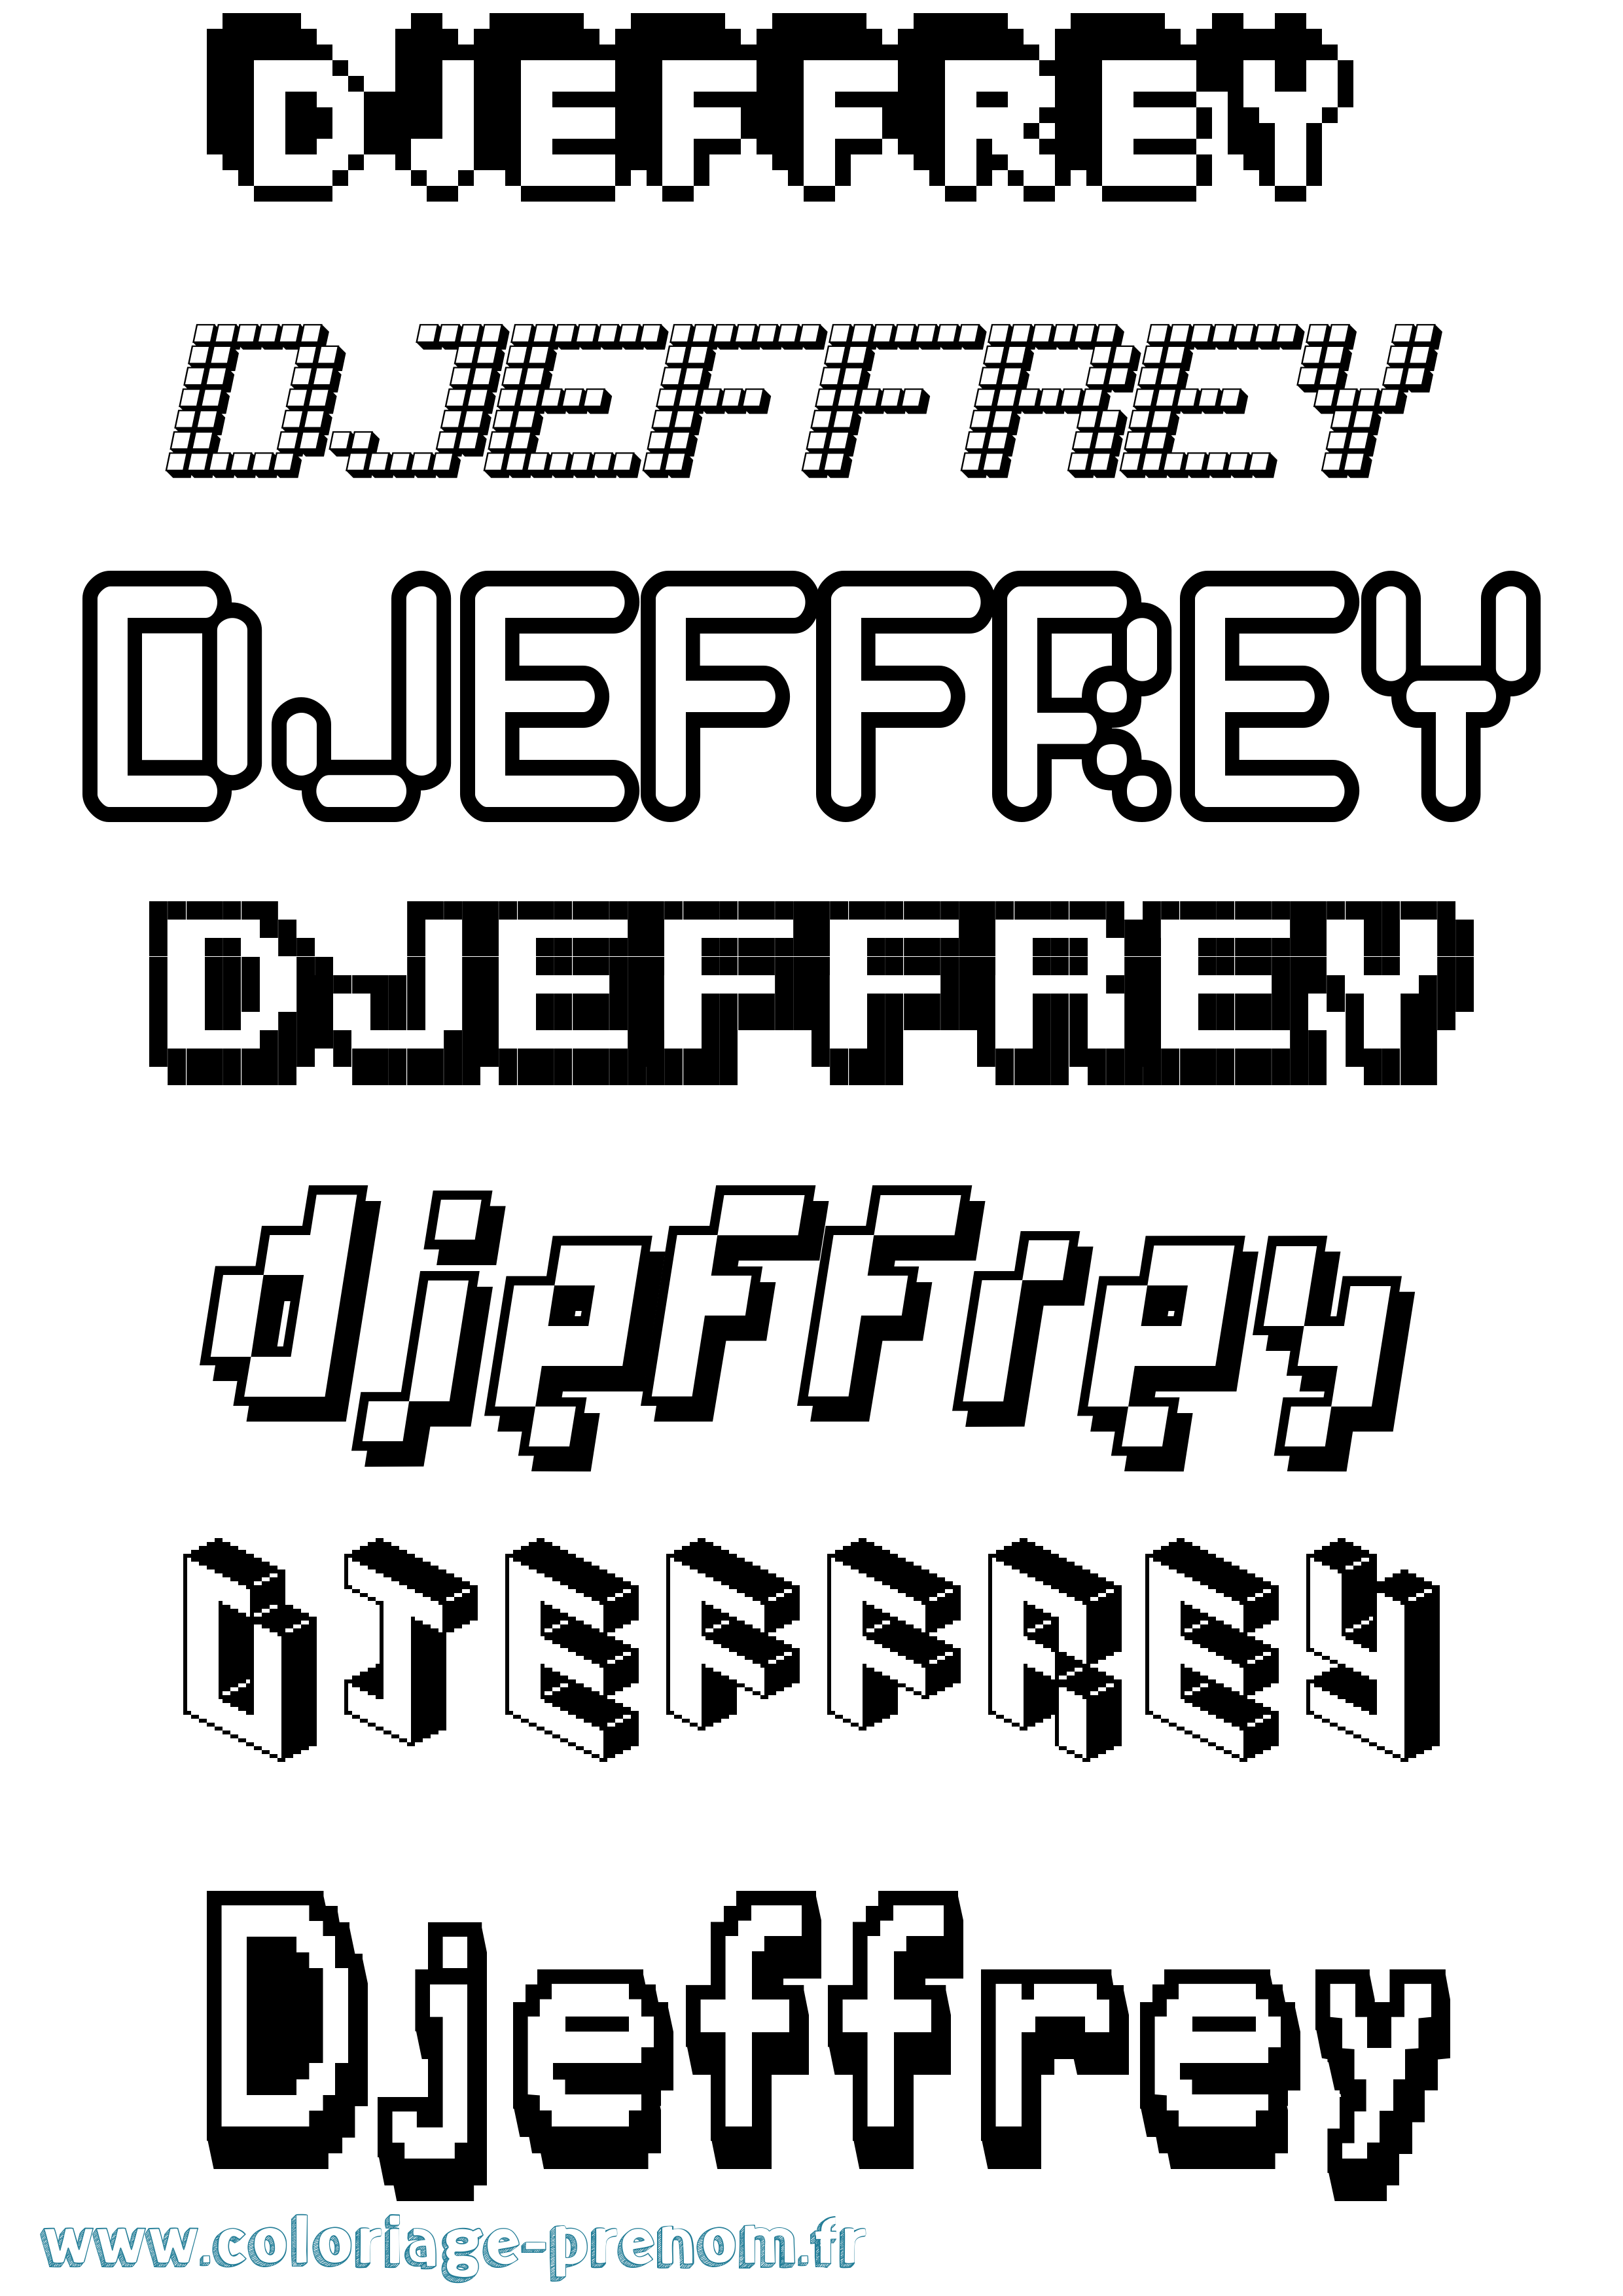 Coloriage prénom Djeffrey Pixel